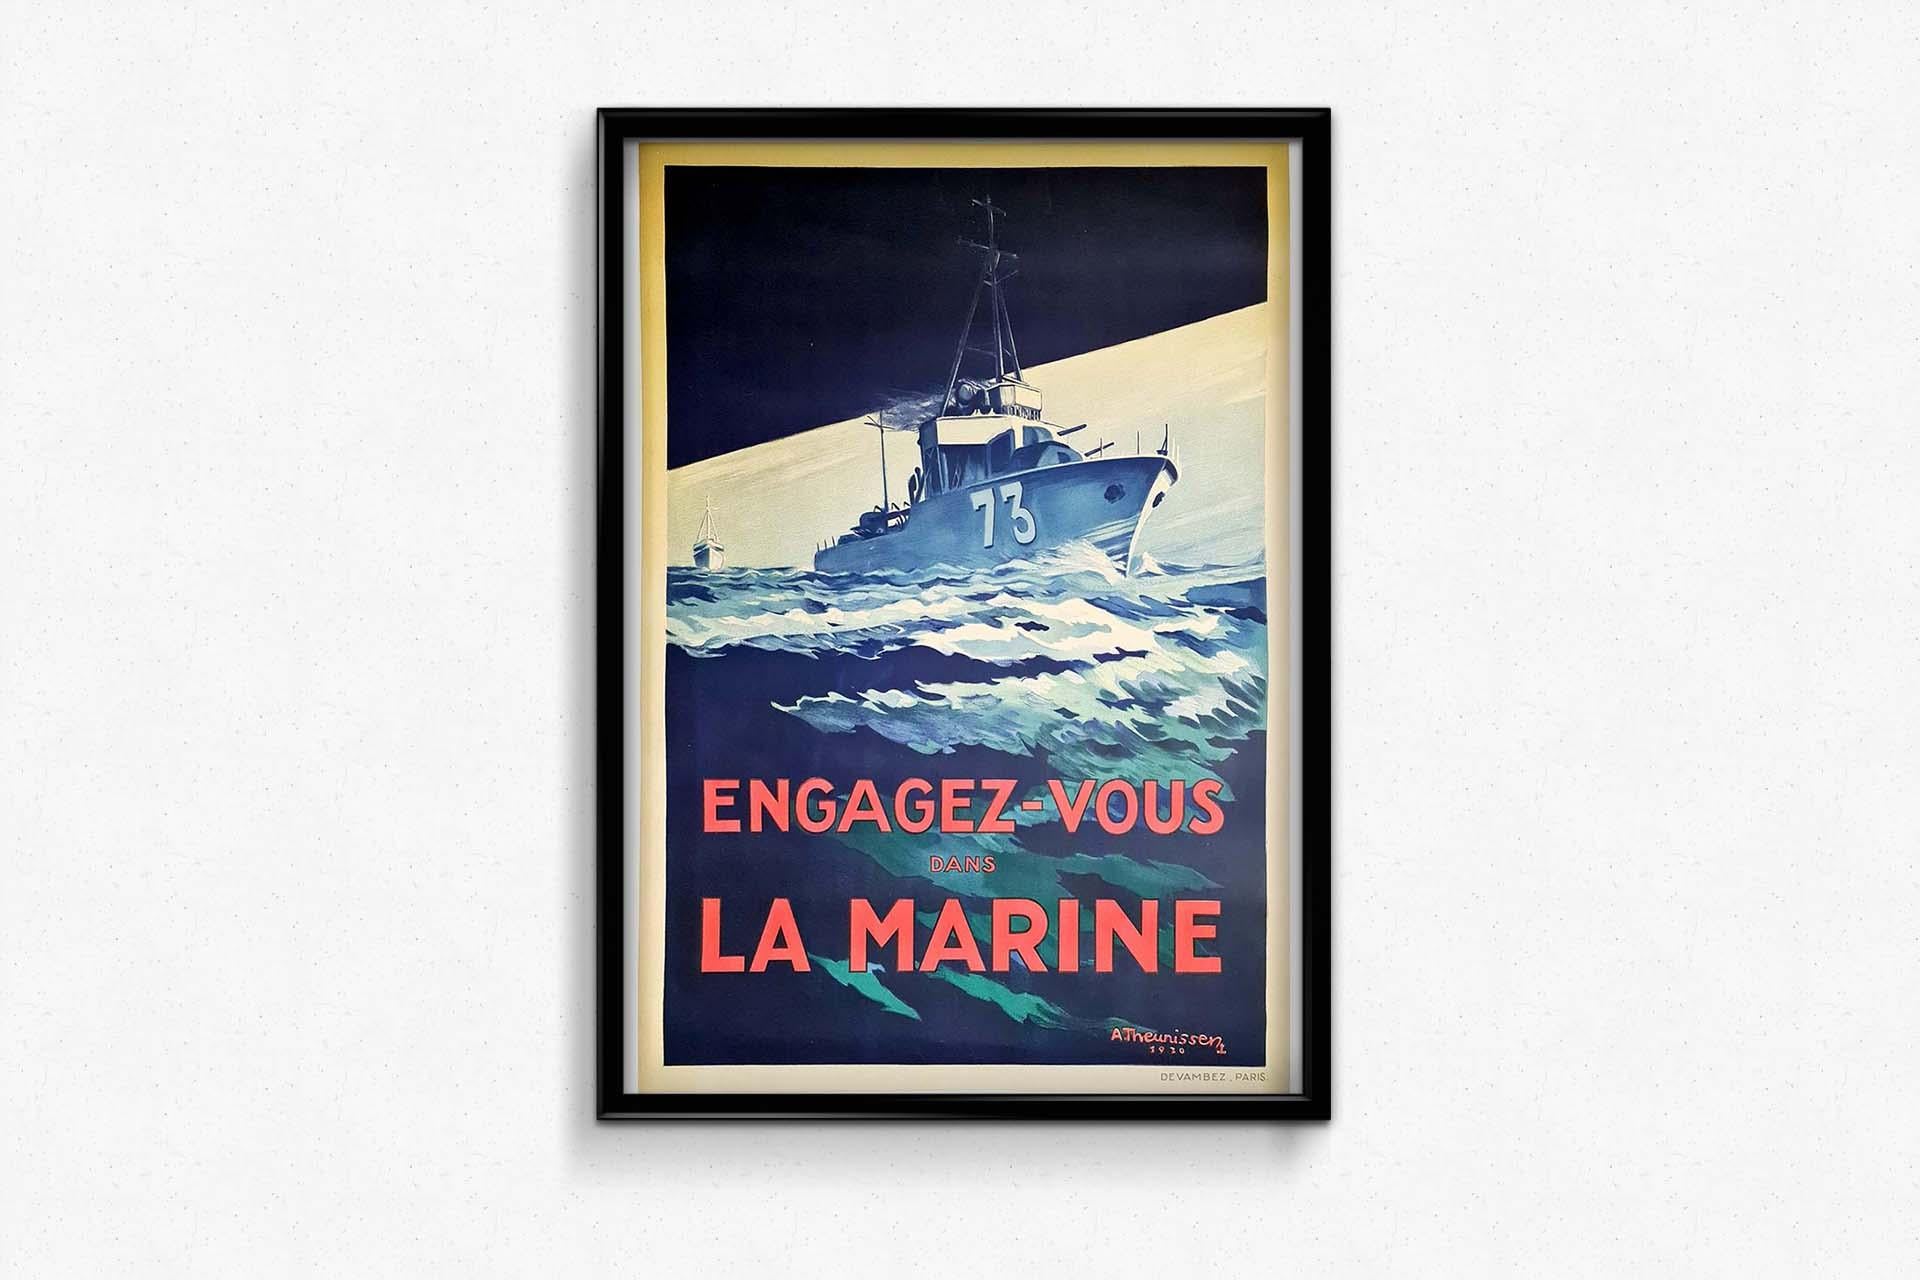 Affiche originale de recrutement militaire naval vintage Engagez-vous dans la Marine / Join the Navy présentant l'œuvre d'art dynamique d'un navire de guerre en mer avec le numéro 73 marqué sur le côté du navire et le titre en lettres rouges